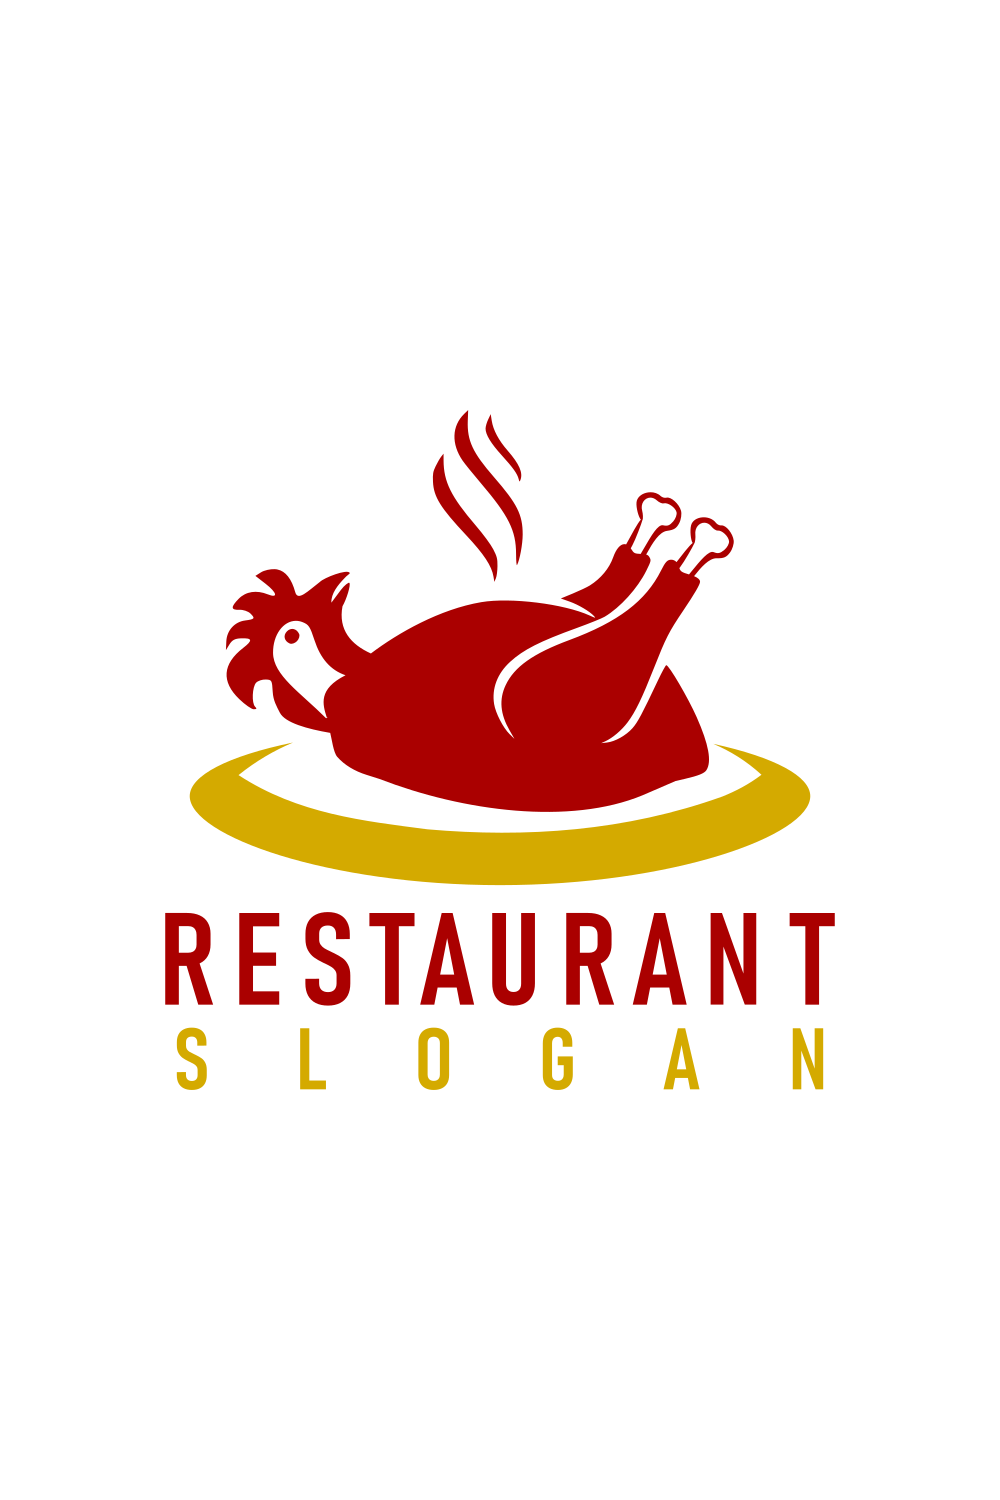 Chicken Custom Logo For Restaurant and Cafe pinterest image.